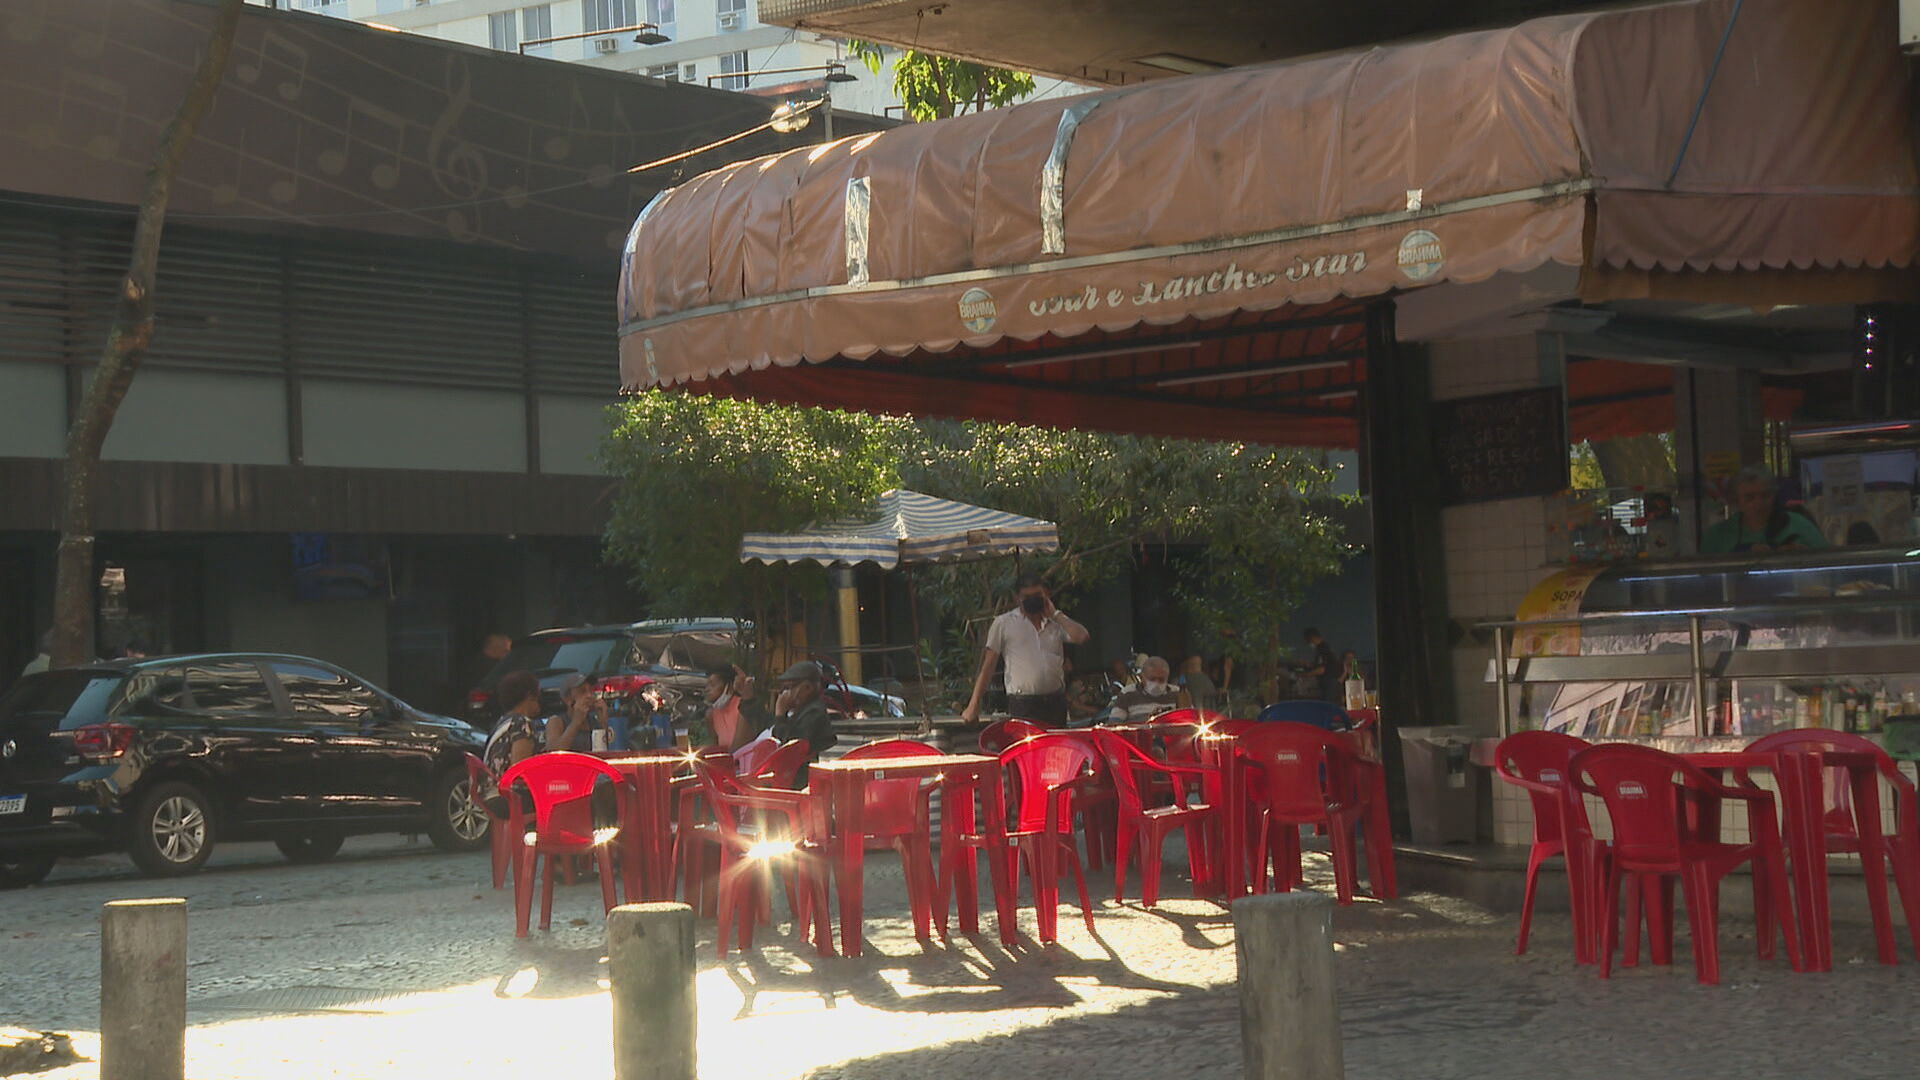 Estabelecimento com mesas vazias após reabertura no Rio de Janeiro